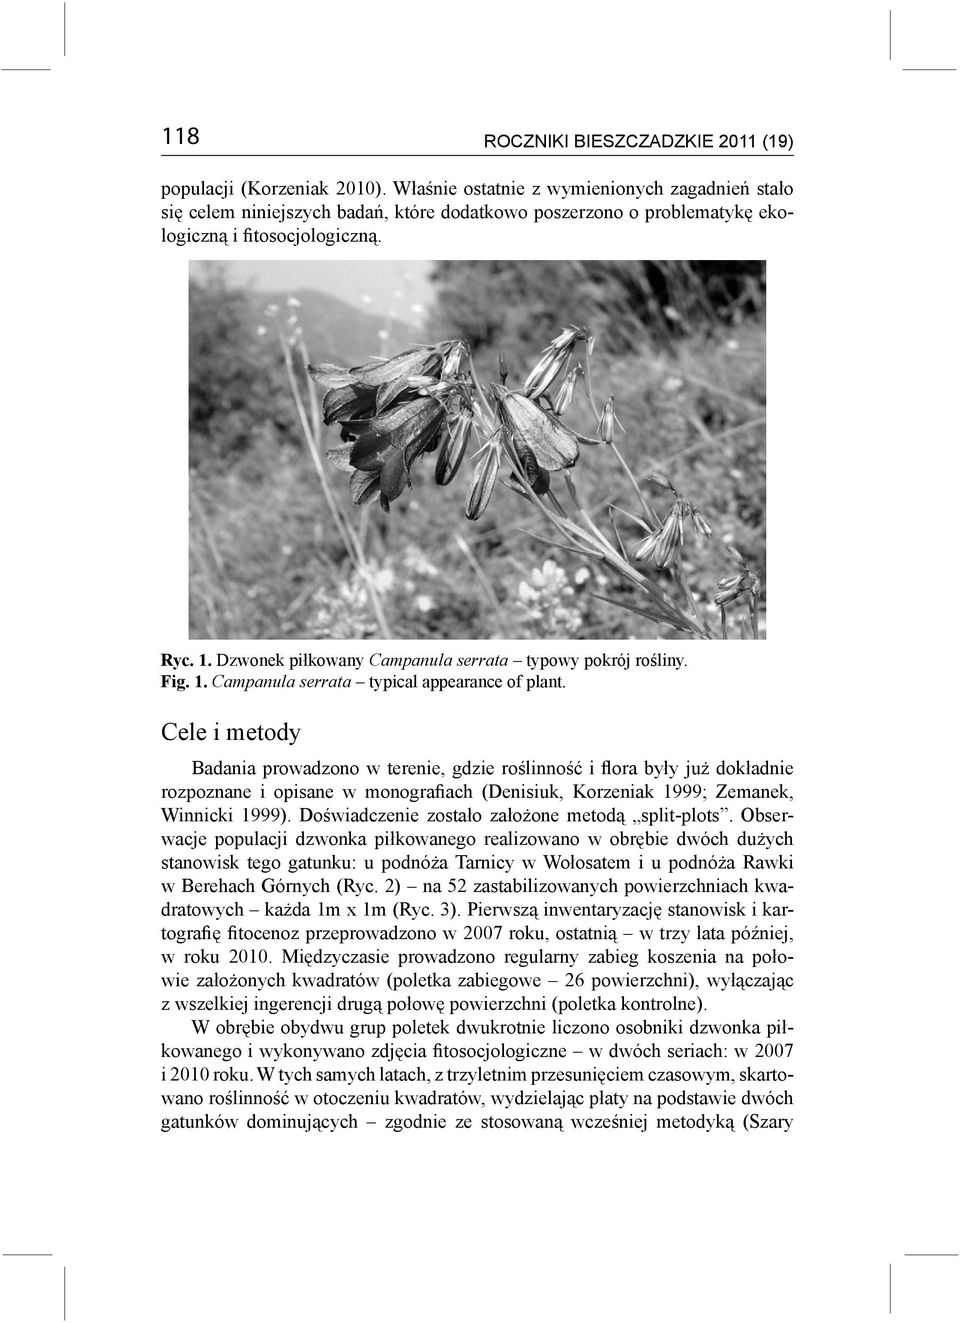 Dzwonek piłkowany Campanula serrata typowy pokrój rośliny. Fig. 1. Campanula serrata typical appearance of plant.